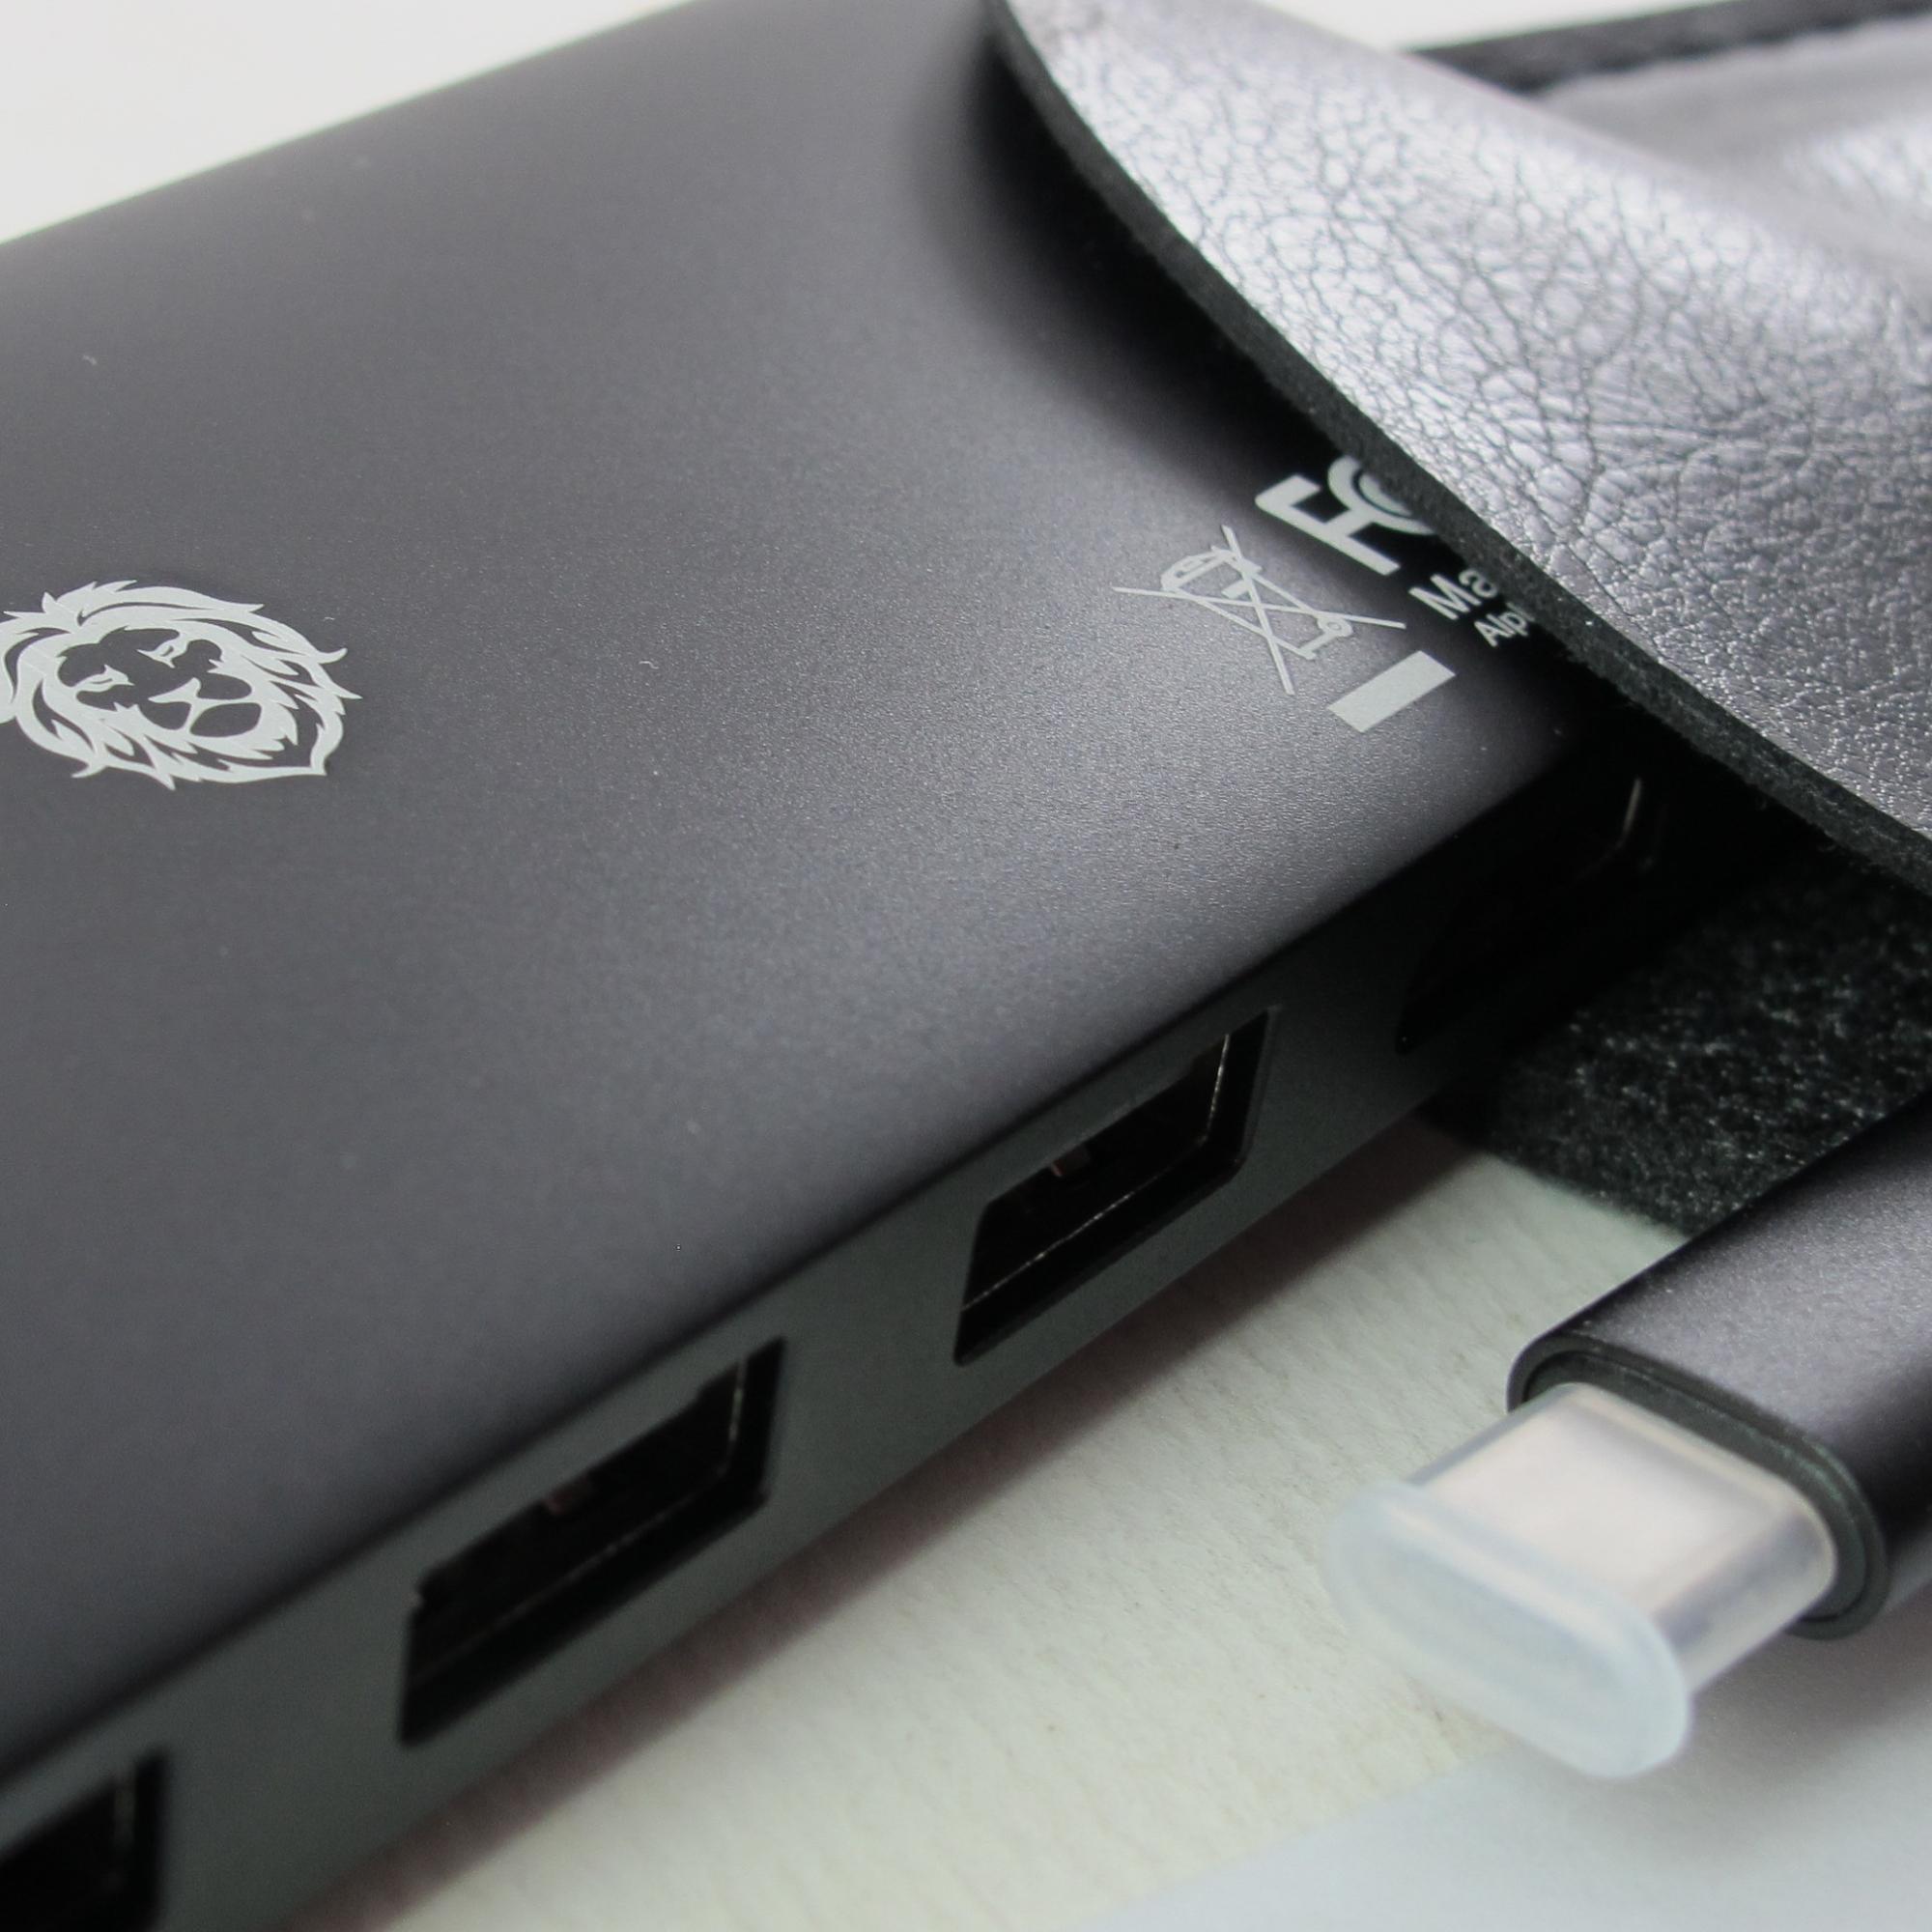 هاب 12 پورت USB-C گرین لاین مدل 12 A